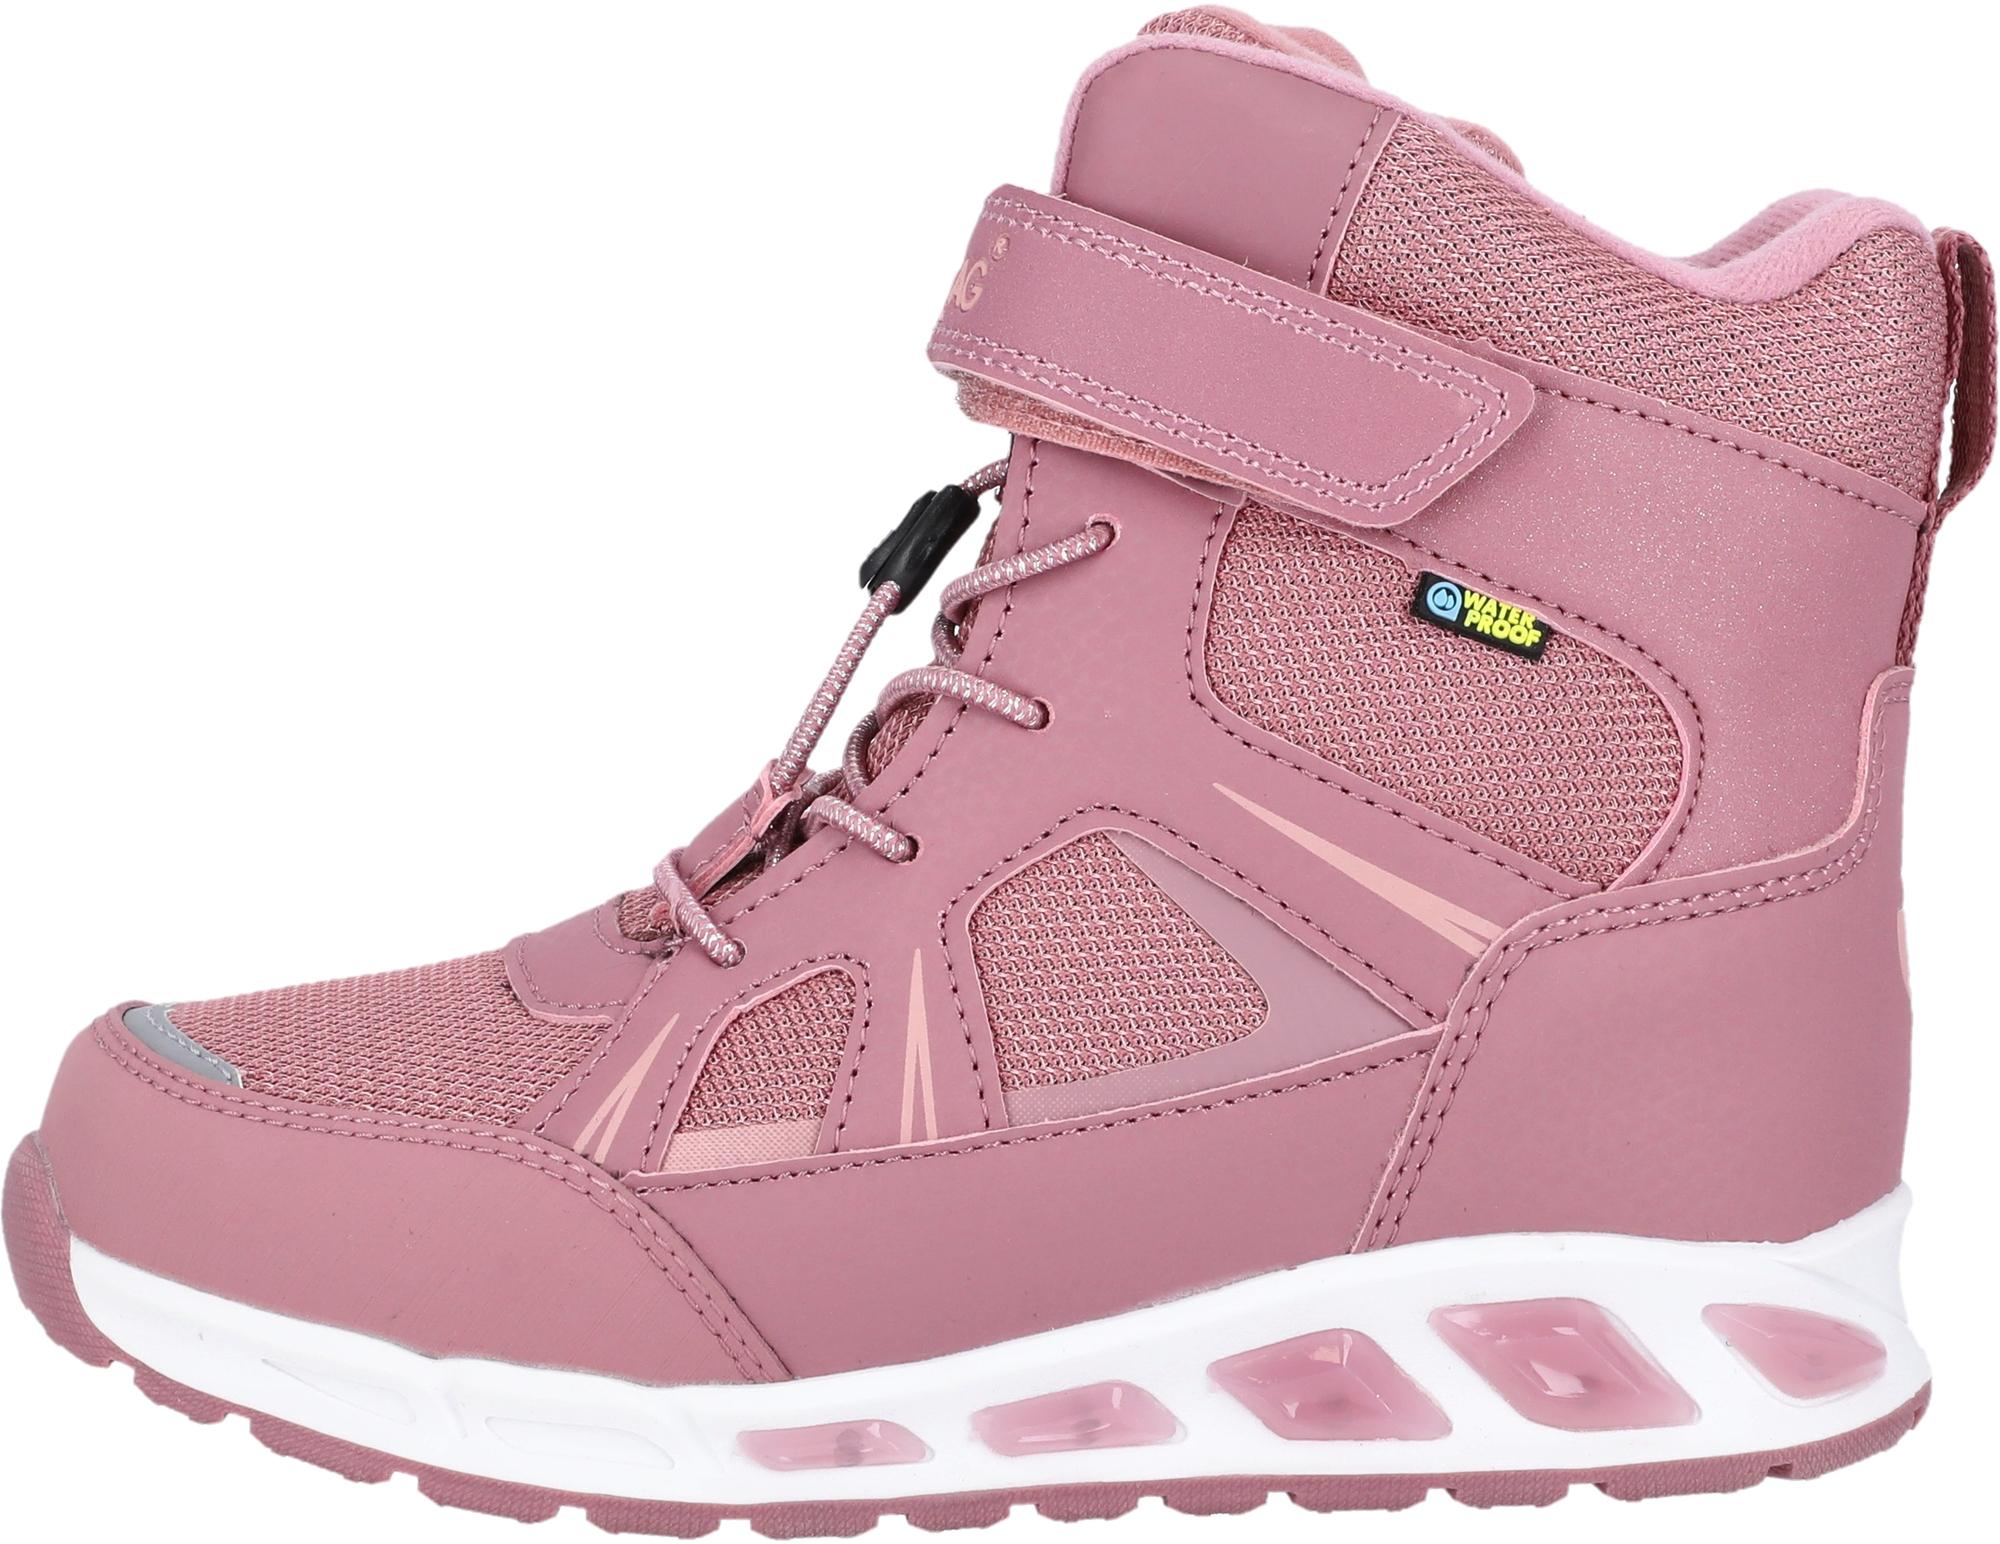 Boots & Stiefel für Kinder in rosa im Online Shop von SportScheck kaufen